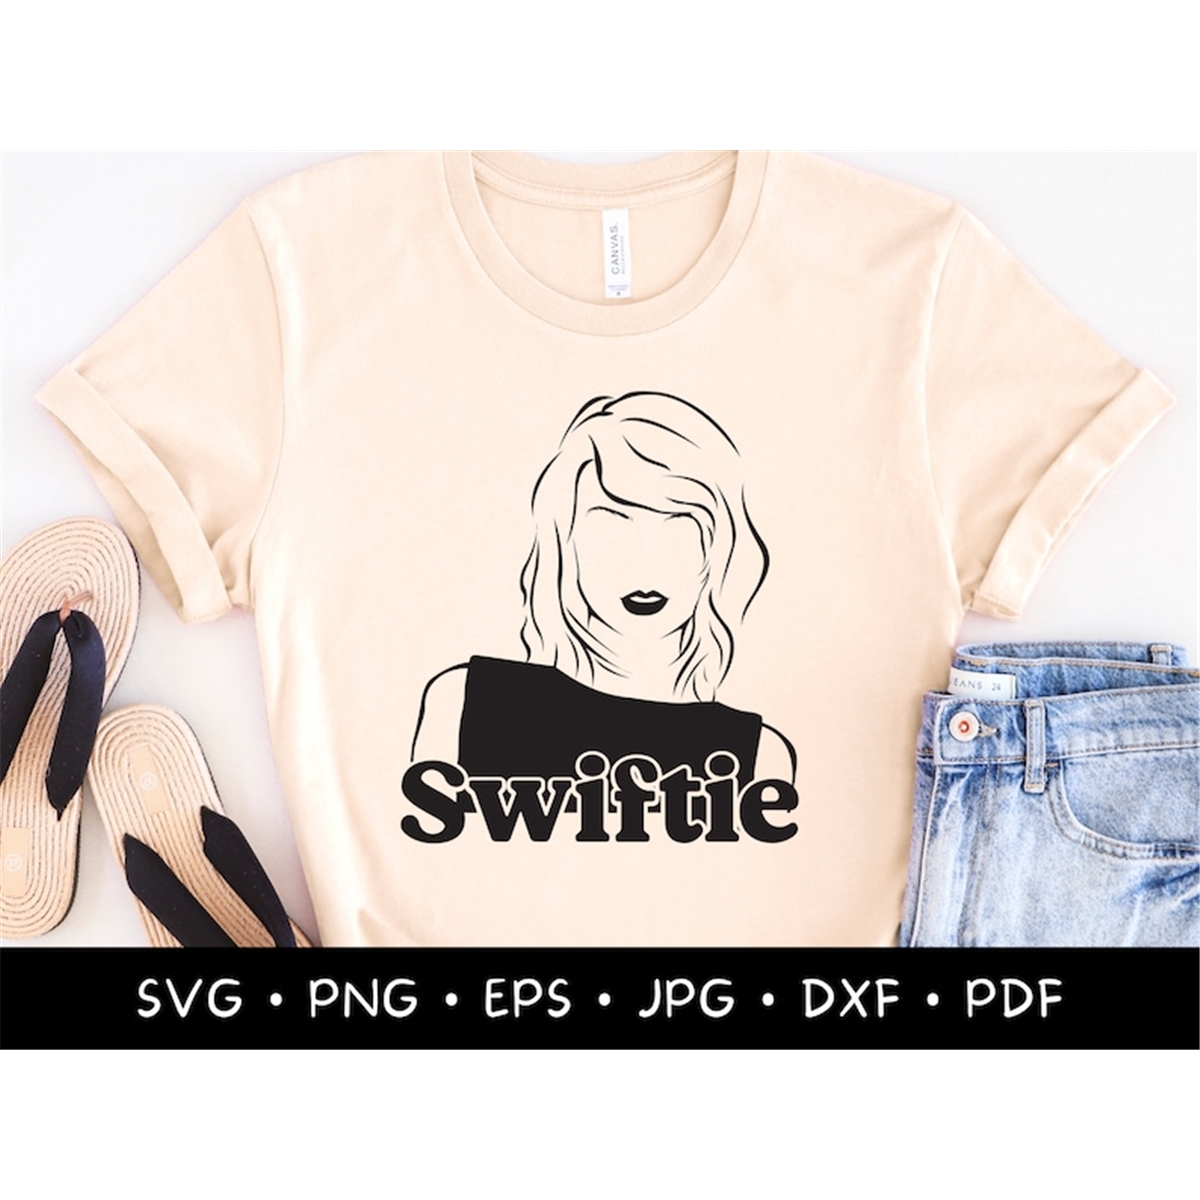 swiftie-svg-swiftie-merch-gift-shirt-taylor-swift-fan-image-1